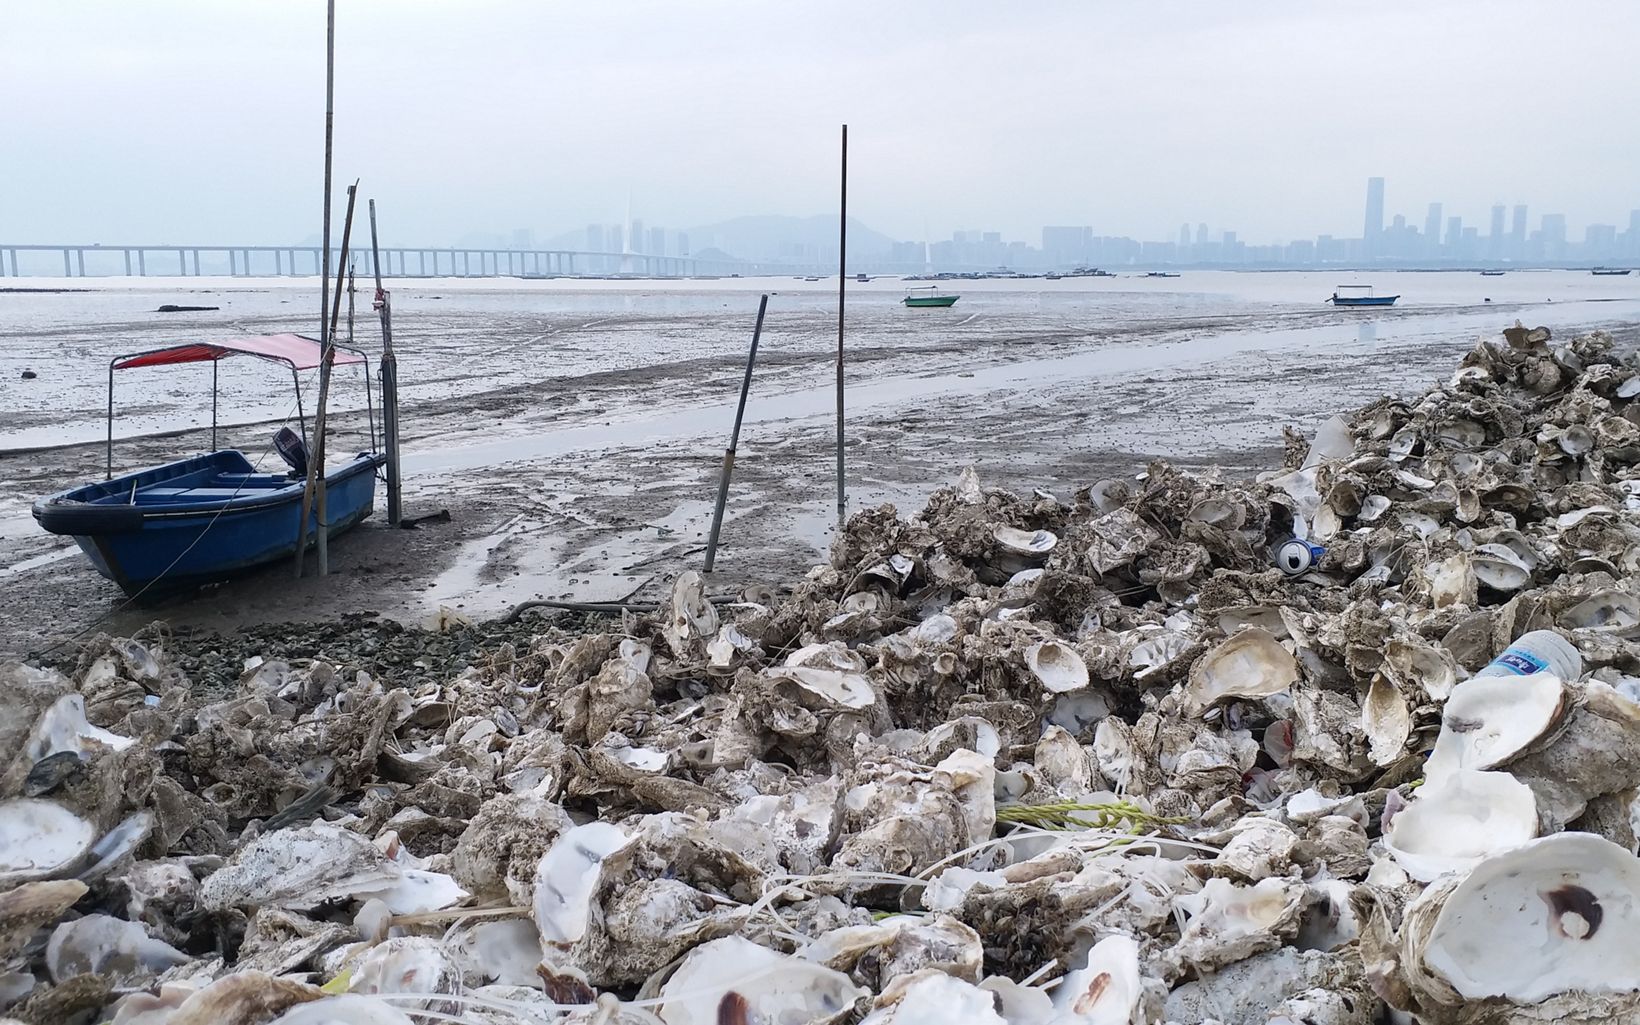 蠔民的參與 蠔民也把那些被棄置於沿岸地方的蠔殼回收。這些蠔殼往往與其他廢料混合在一起，例如水泥和膠網，為岸邊製造更多垃圾，更令野生動物的棲息地逐漸退化。 © Anniqa Law/TNC